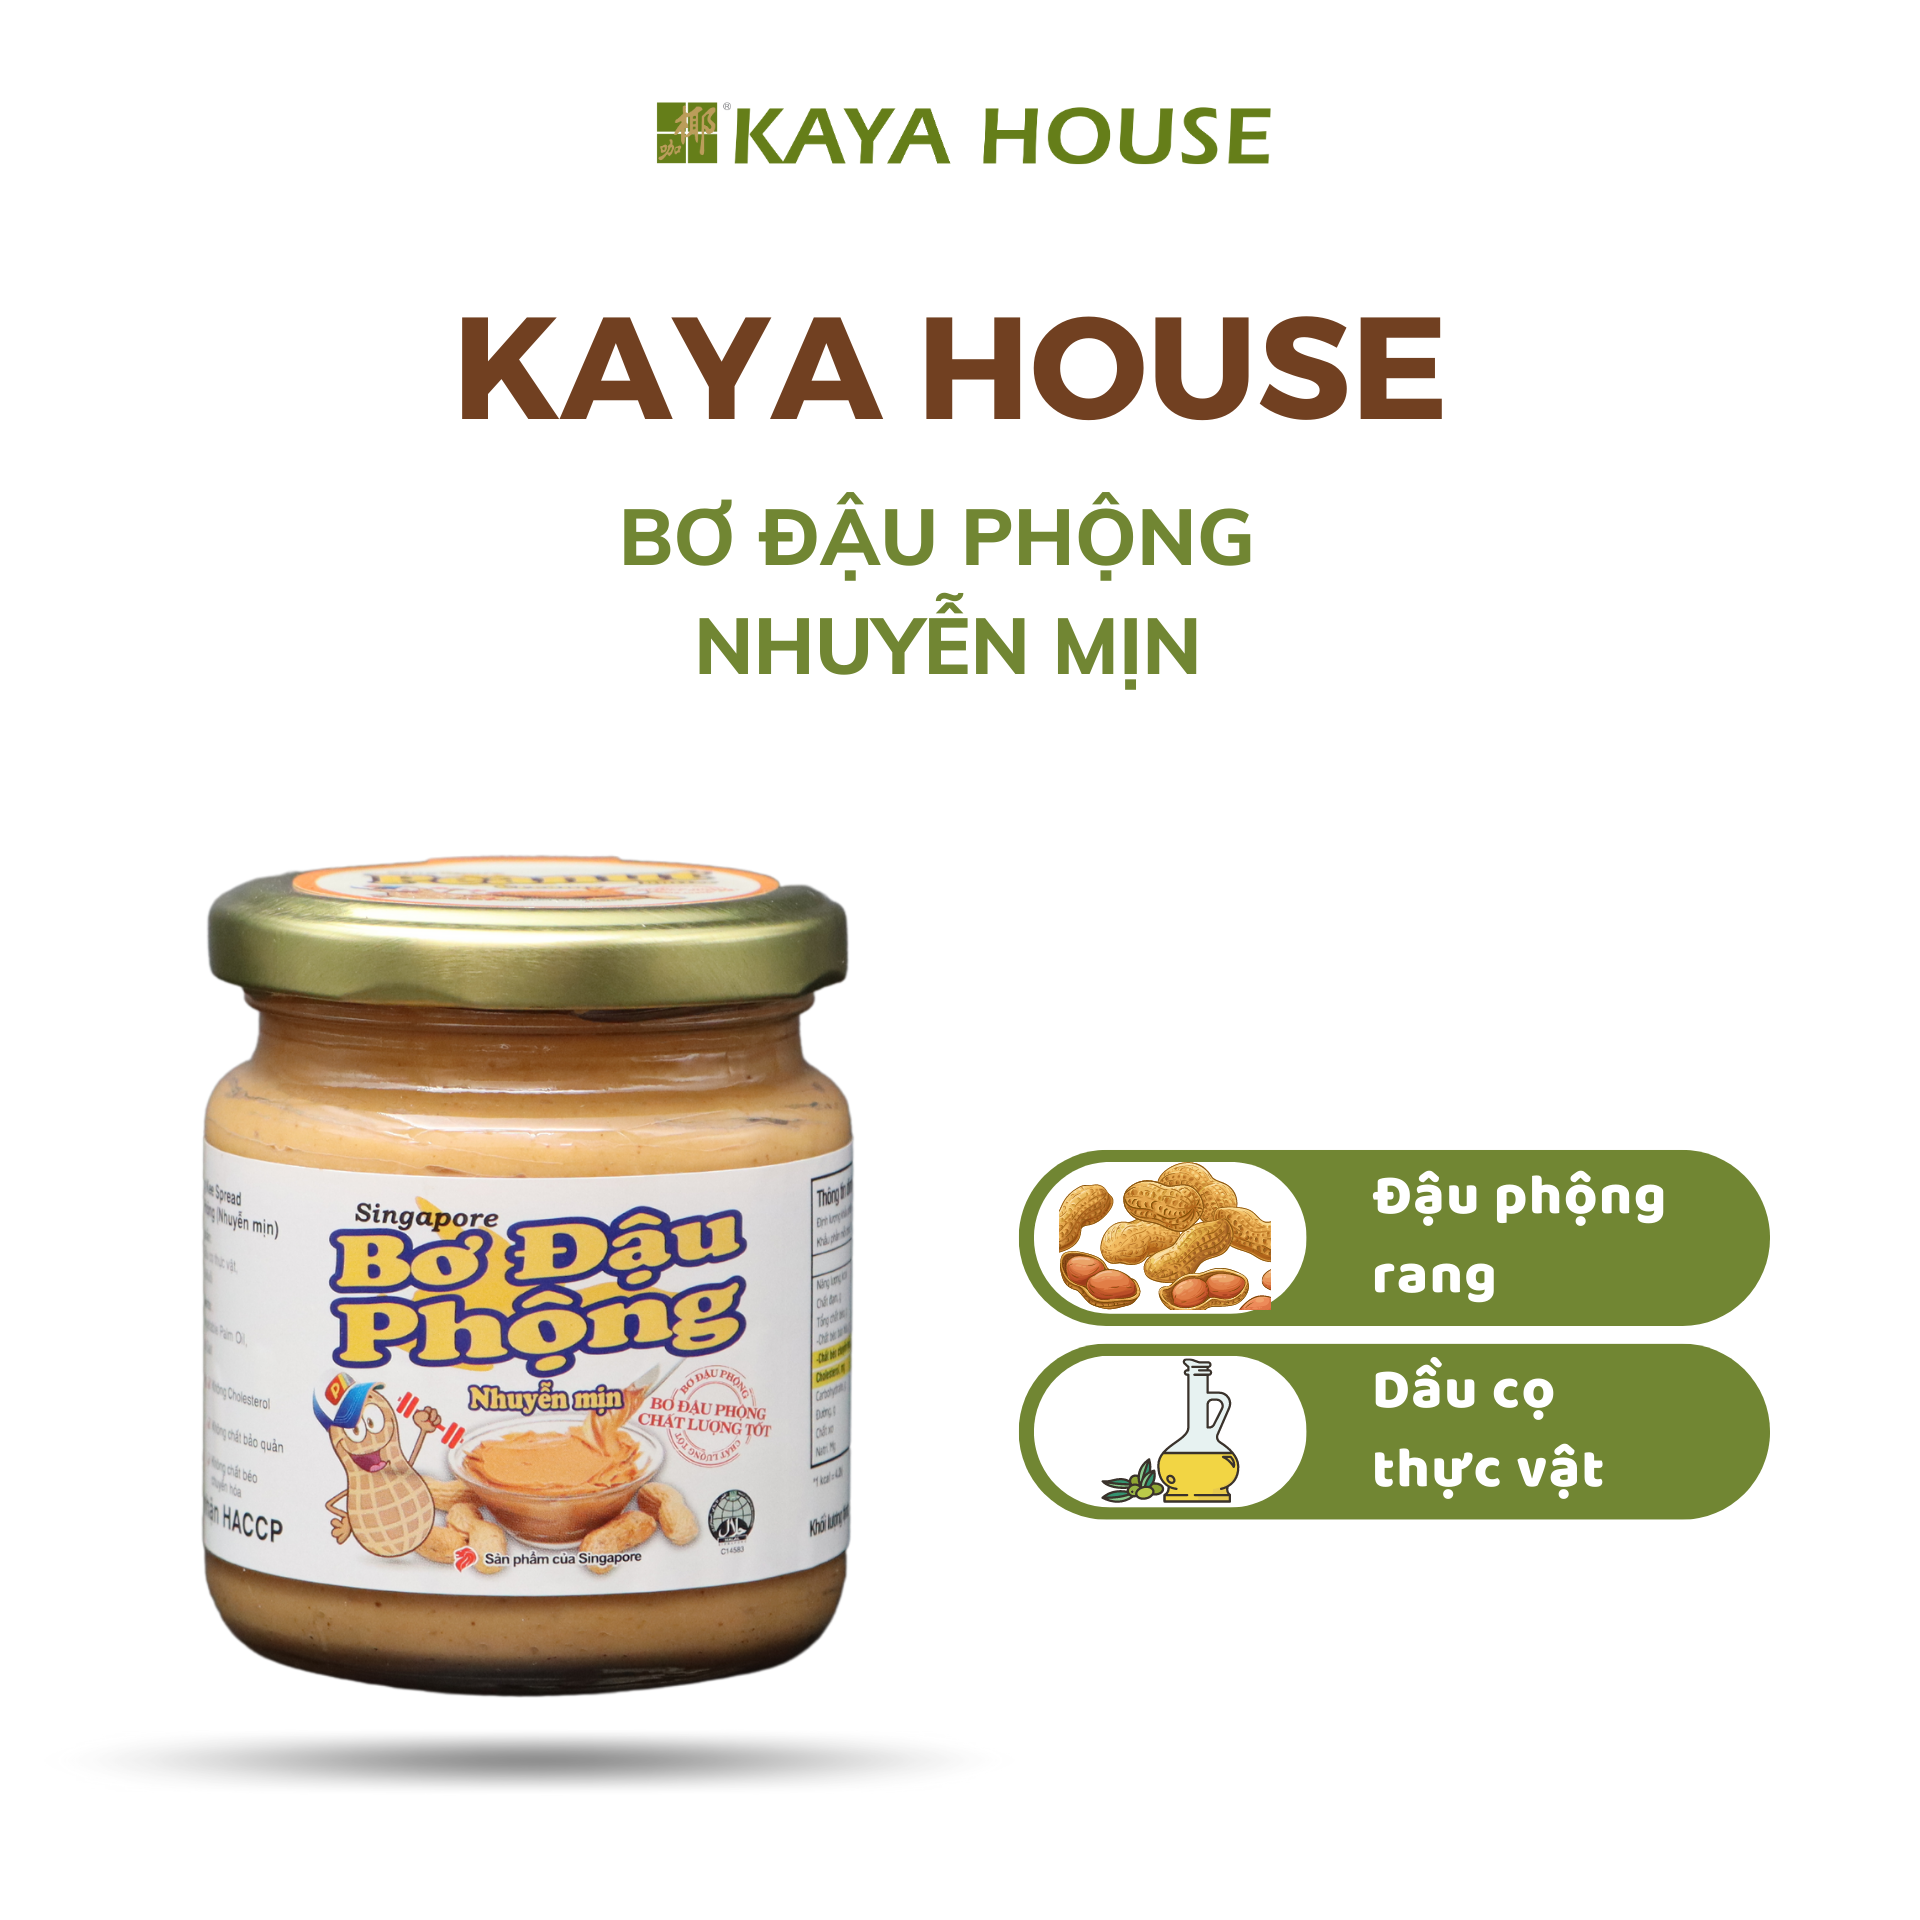 Thùng 12 hũ Bơ đậu phộng nhuyễn mịn Singapore 200G - Kaya House - Ăn kèm với Sandwich, nguyên liệu cho các món chay mặn